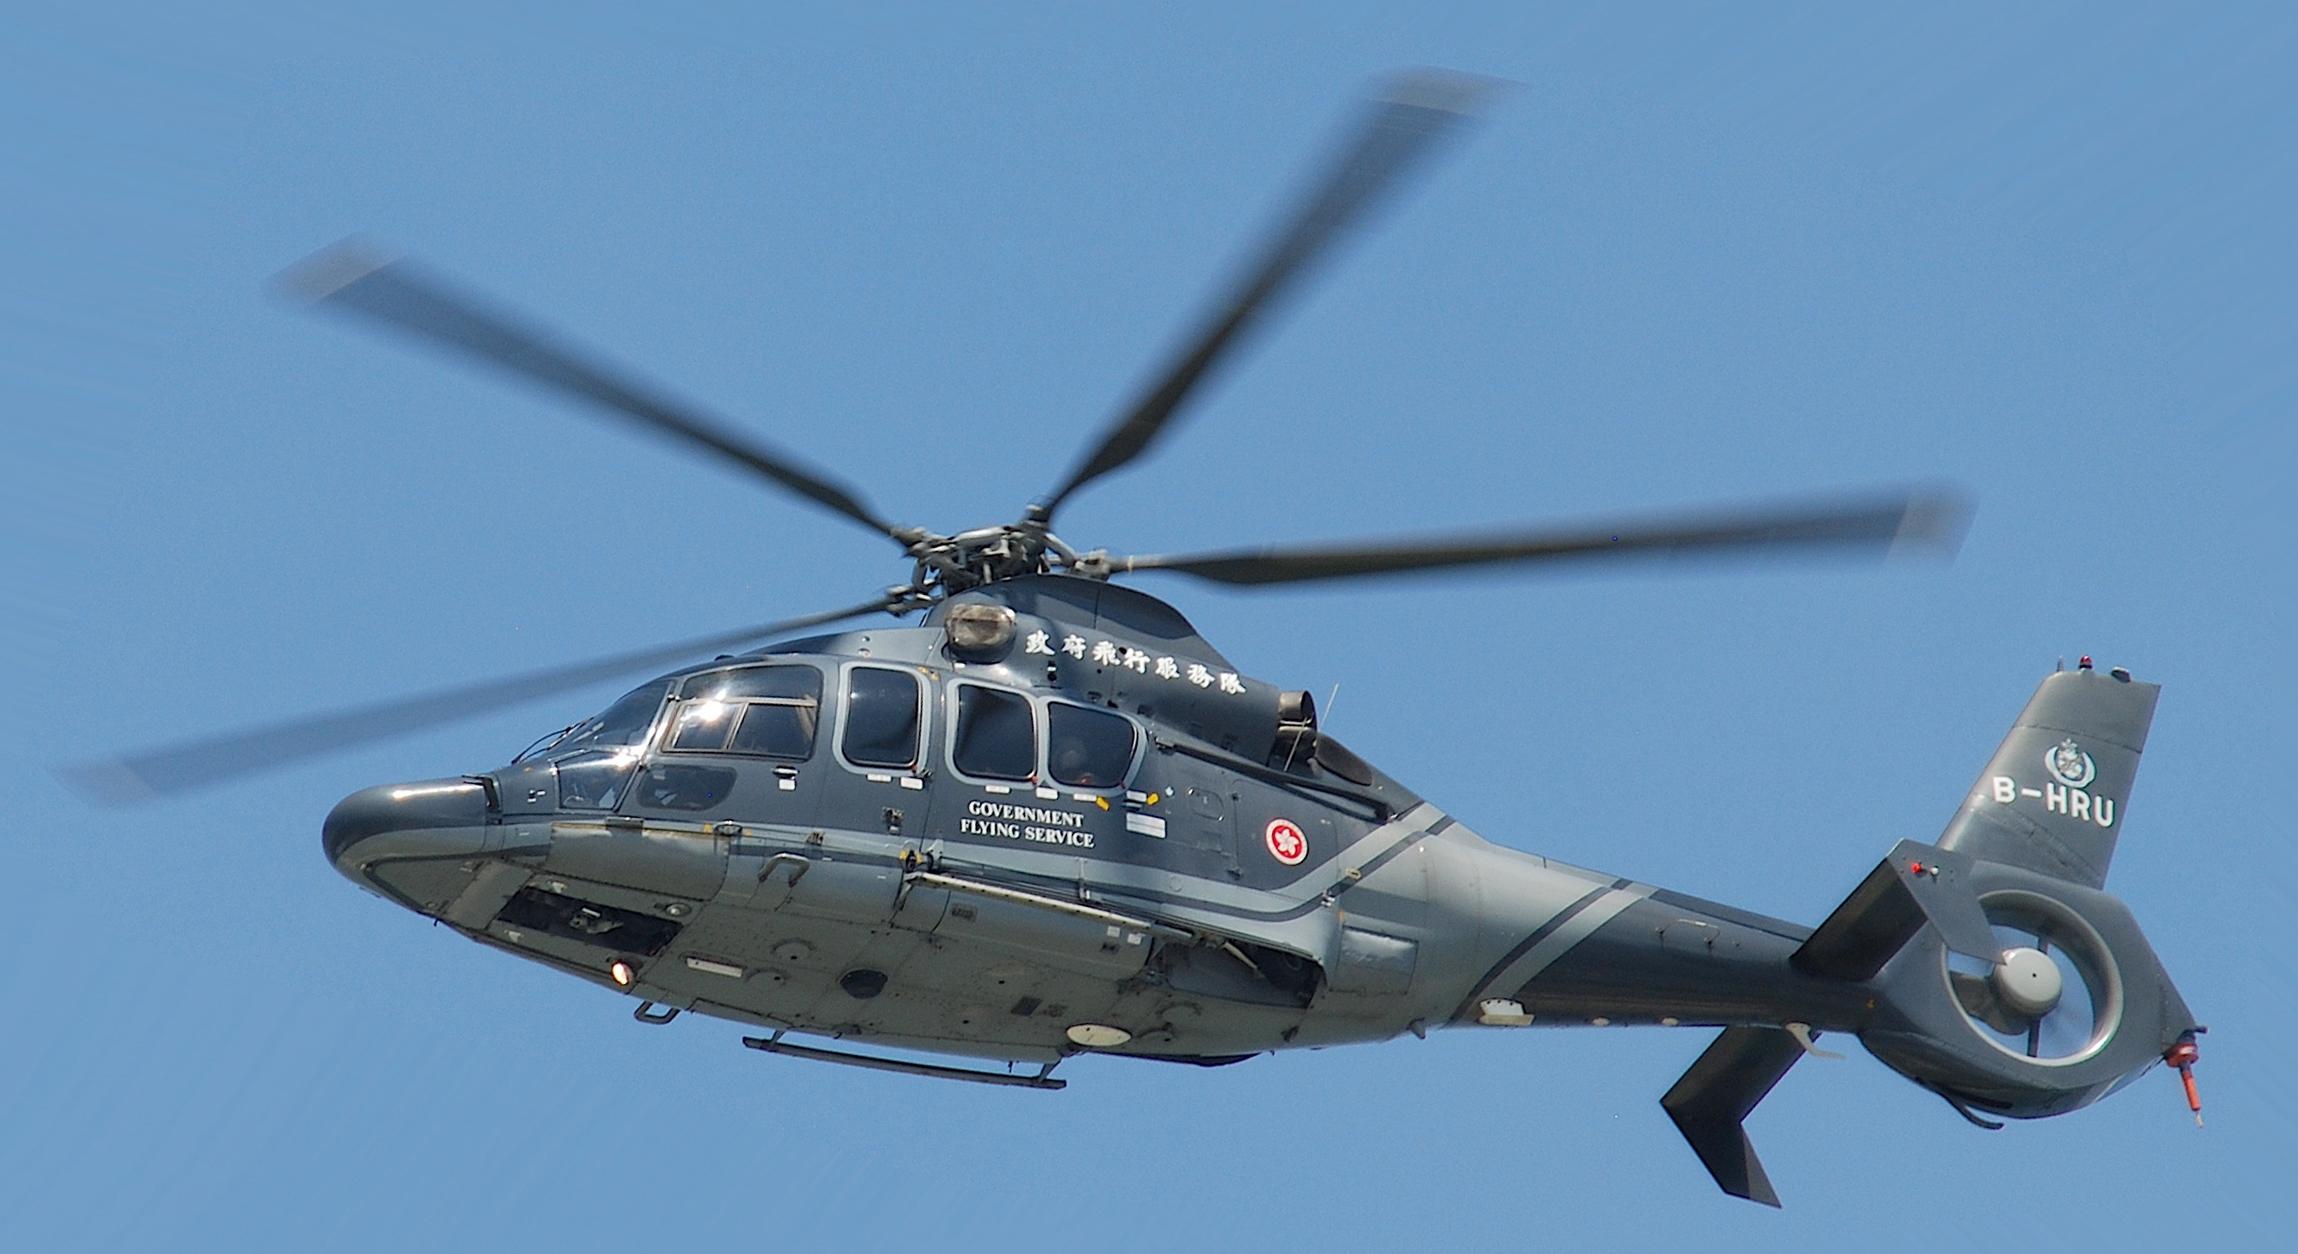 h175直升机参数图片